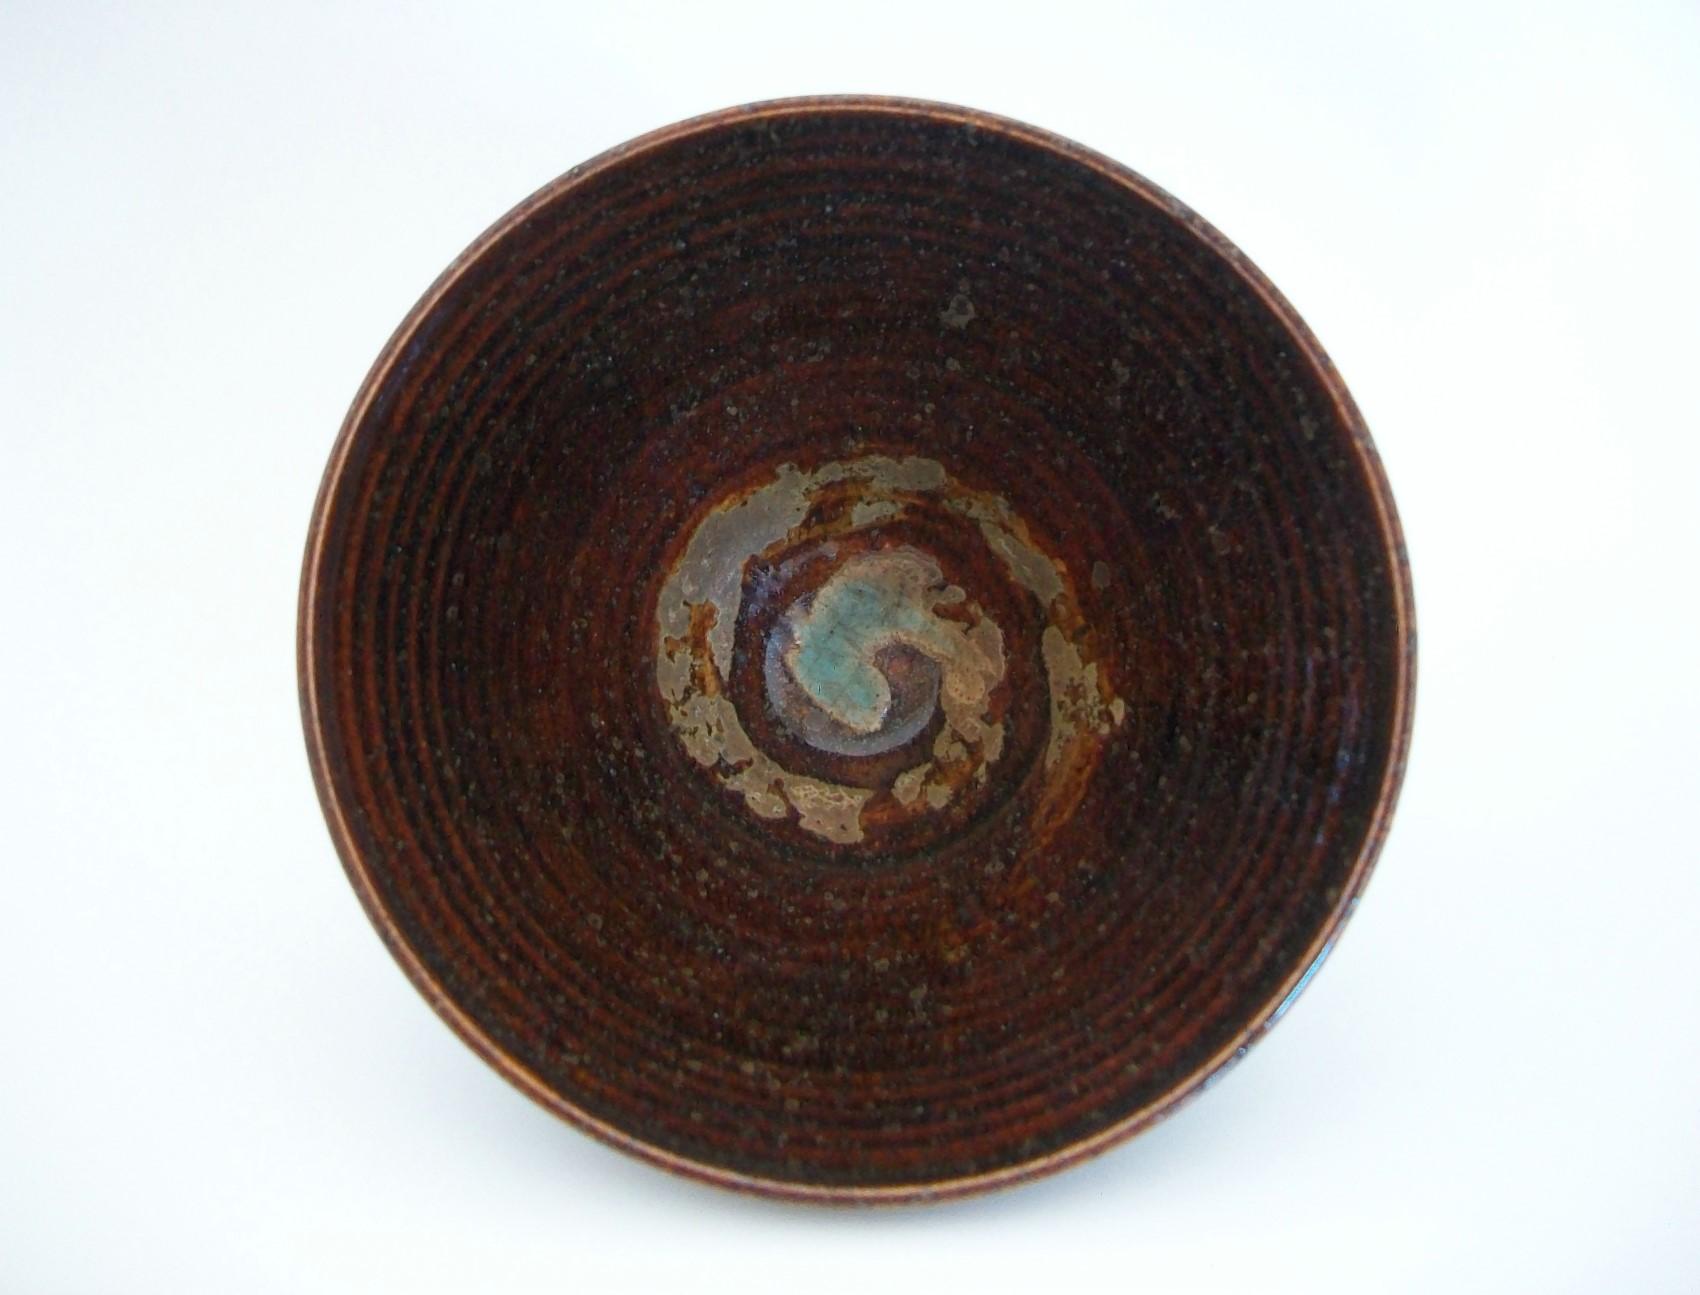 Superbe bol conique de Studio Pottery - jeté au tour avec un motif tourbillonnant peint à la main à l'intérieur du bol en tan et turquoise - glaçure brune brillante infusée de sable sur l'ensemble - indistinctement signé et daté sur la base - Canada